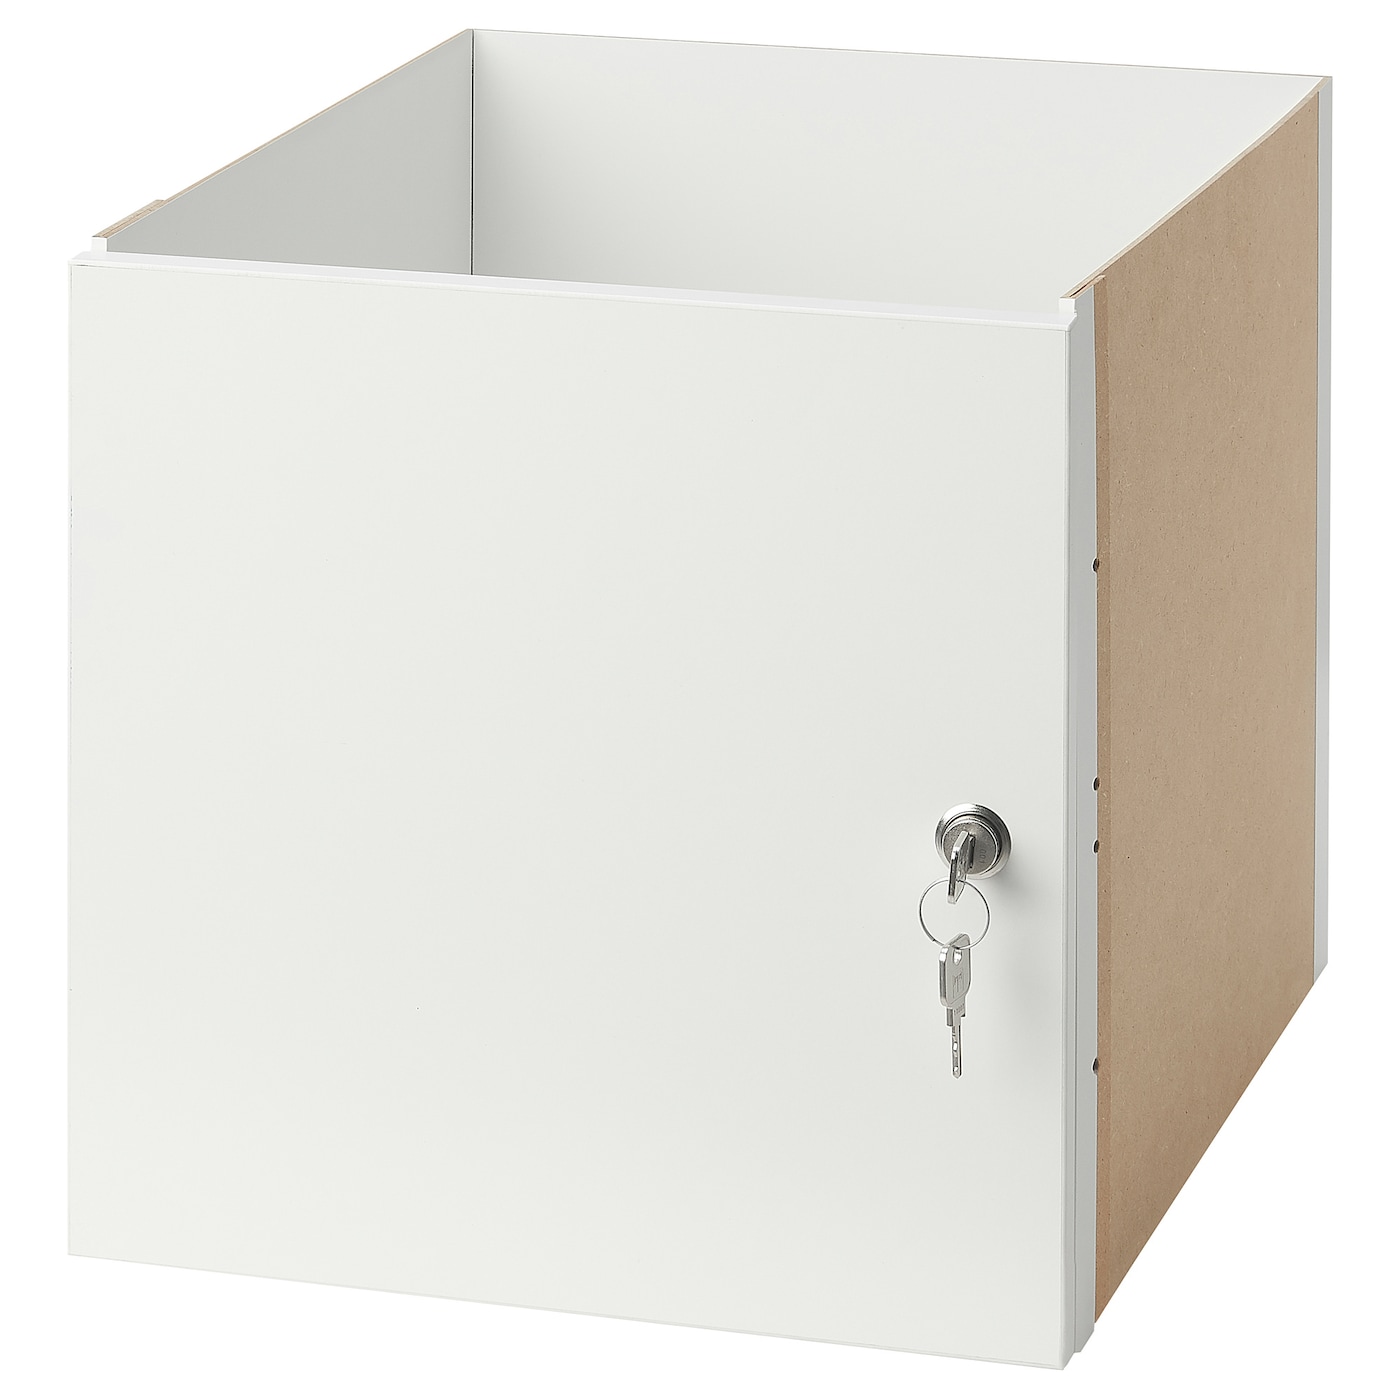 Вставка с запирающейся дверцей - KALLAX IKEA/КАЛЛАКС ИКЕА, 33х33 см, белый/бежевый